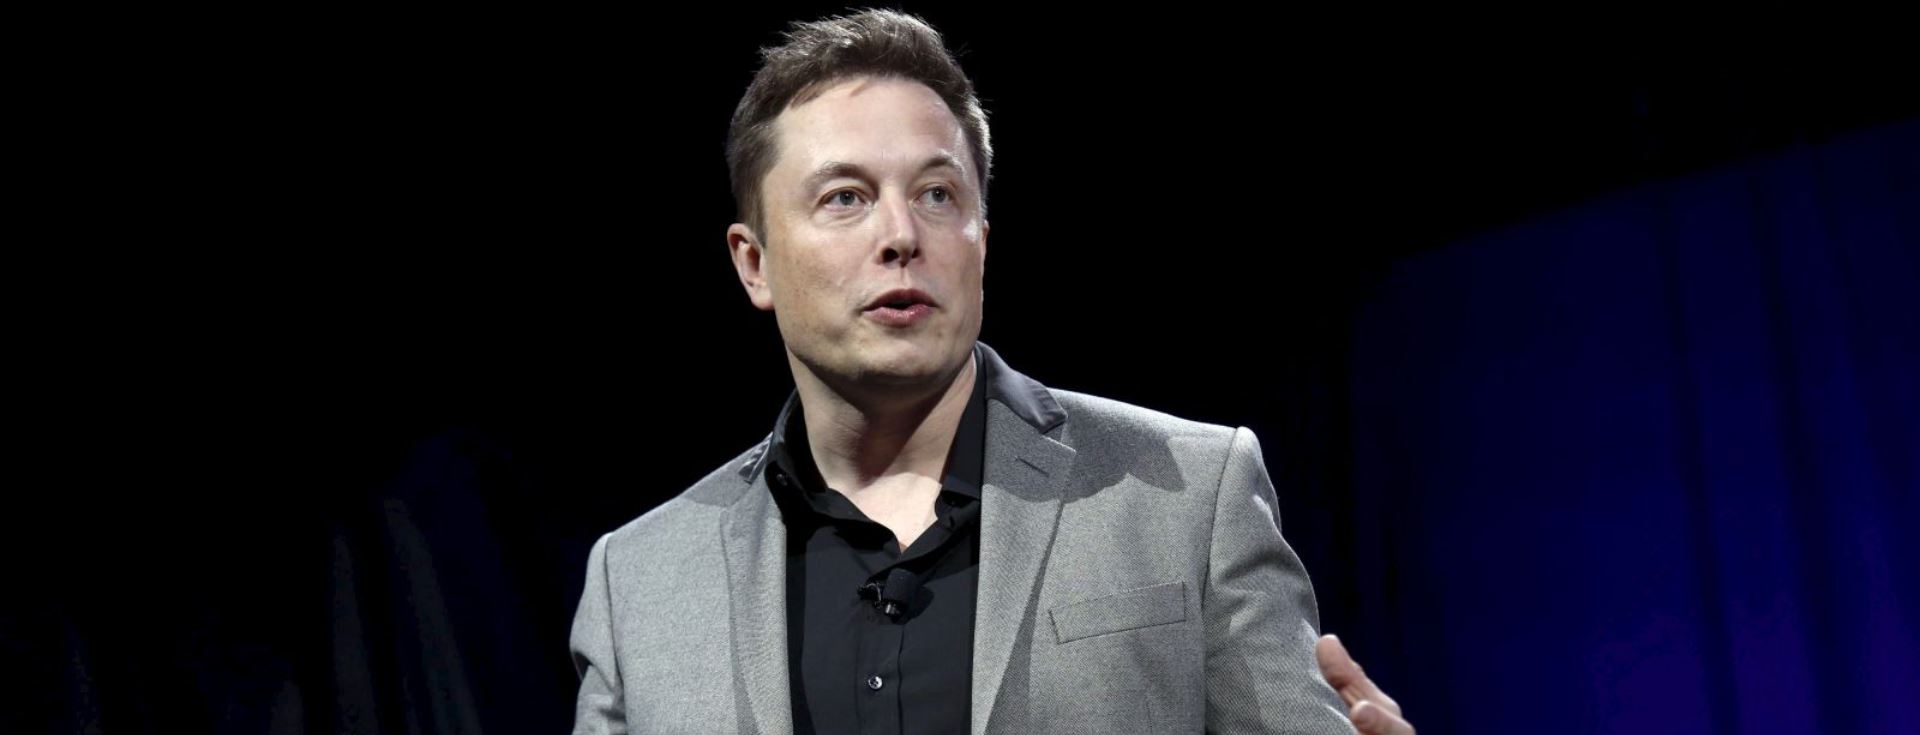 Dünyayı Kurtarması İçin Elon Musk'a Kanepe Almaya Karar Verdiler